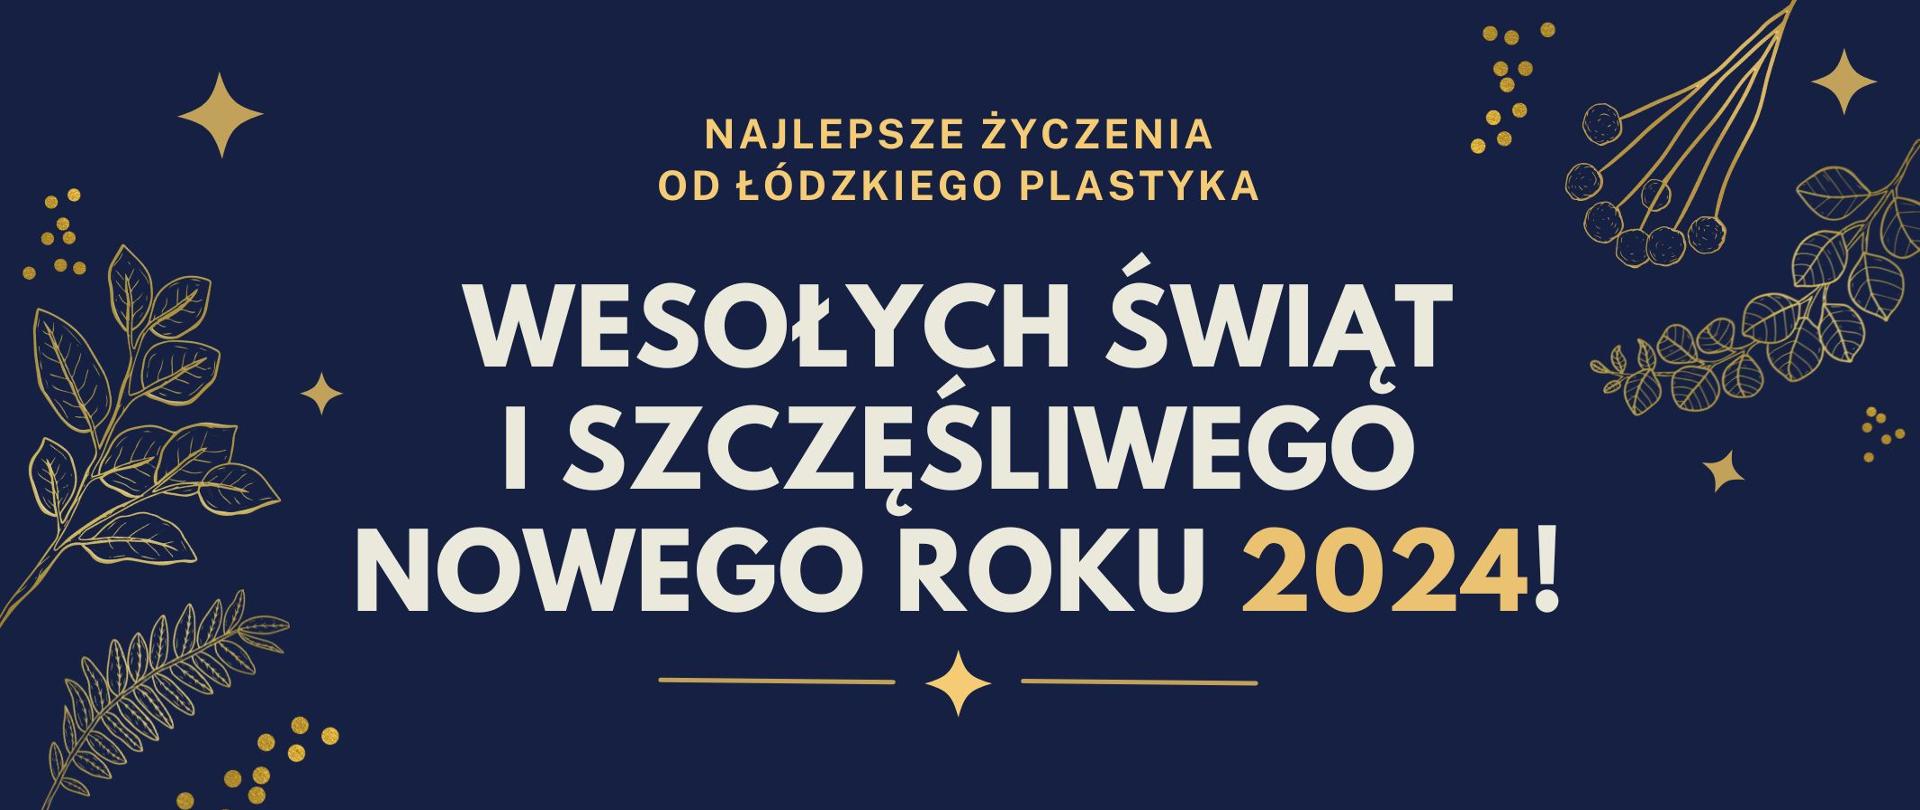 Grafika. Na granatowym tle złoty napis Najlepsze życzenia od Łódzkiego Plastyka. Biały napis: Wesołych świąt i szczęśliwego nowego roku. Złoty napis 2024